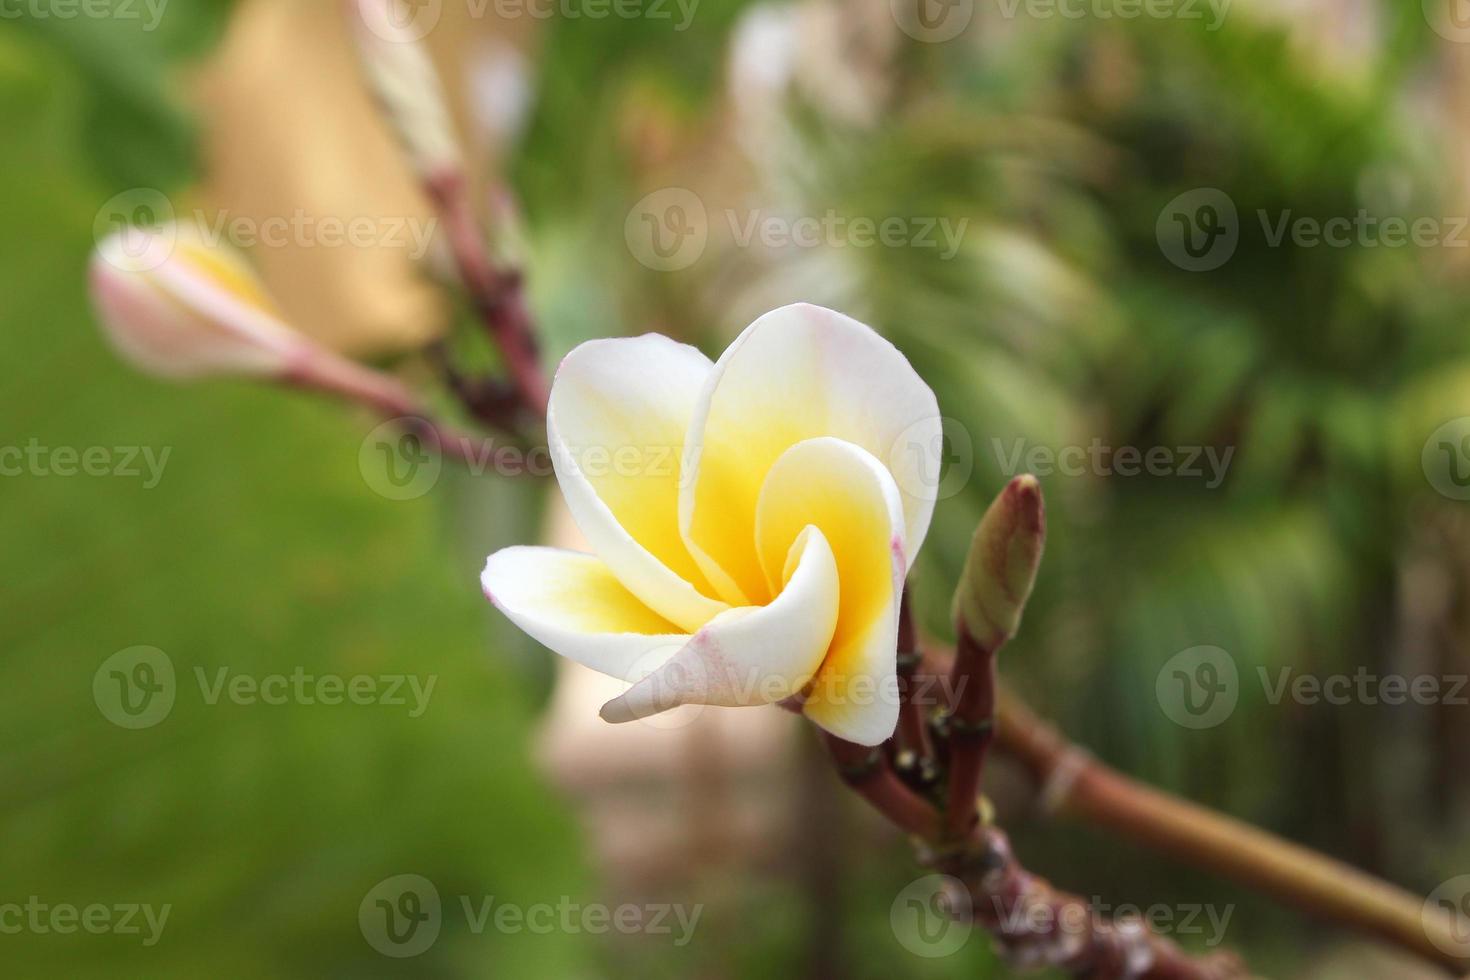 viaje a la isla phi phi, tailandia. flores blancas y amarillas de plumeria en la rama del parque. foto